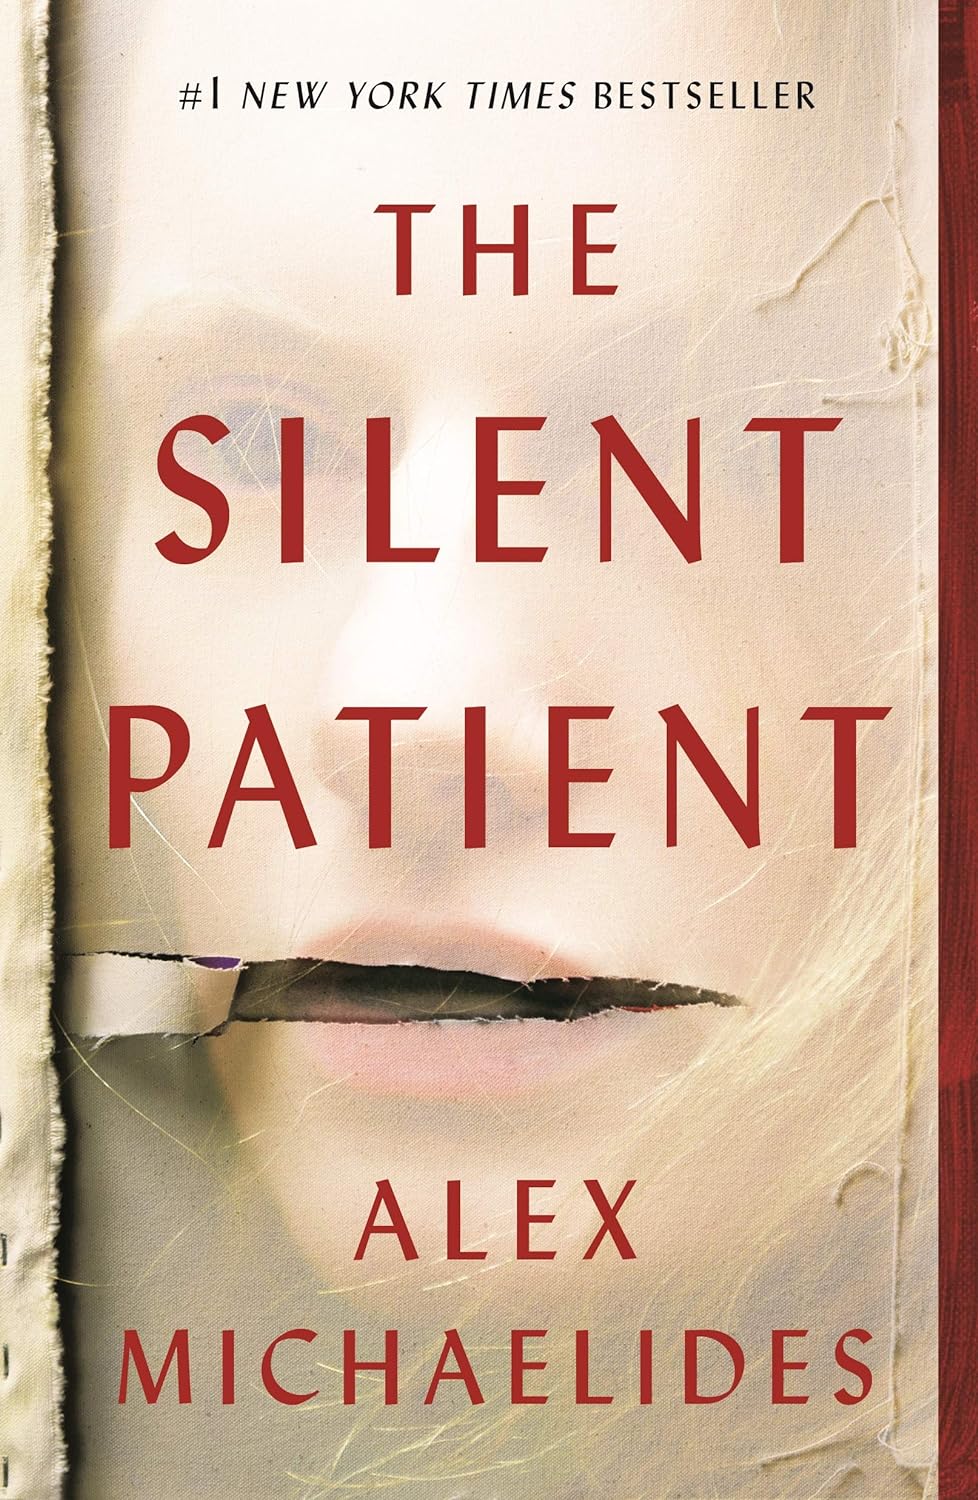 The Silent Patient - by Alex Michaelides